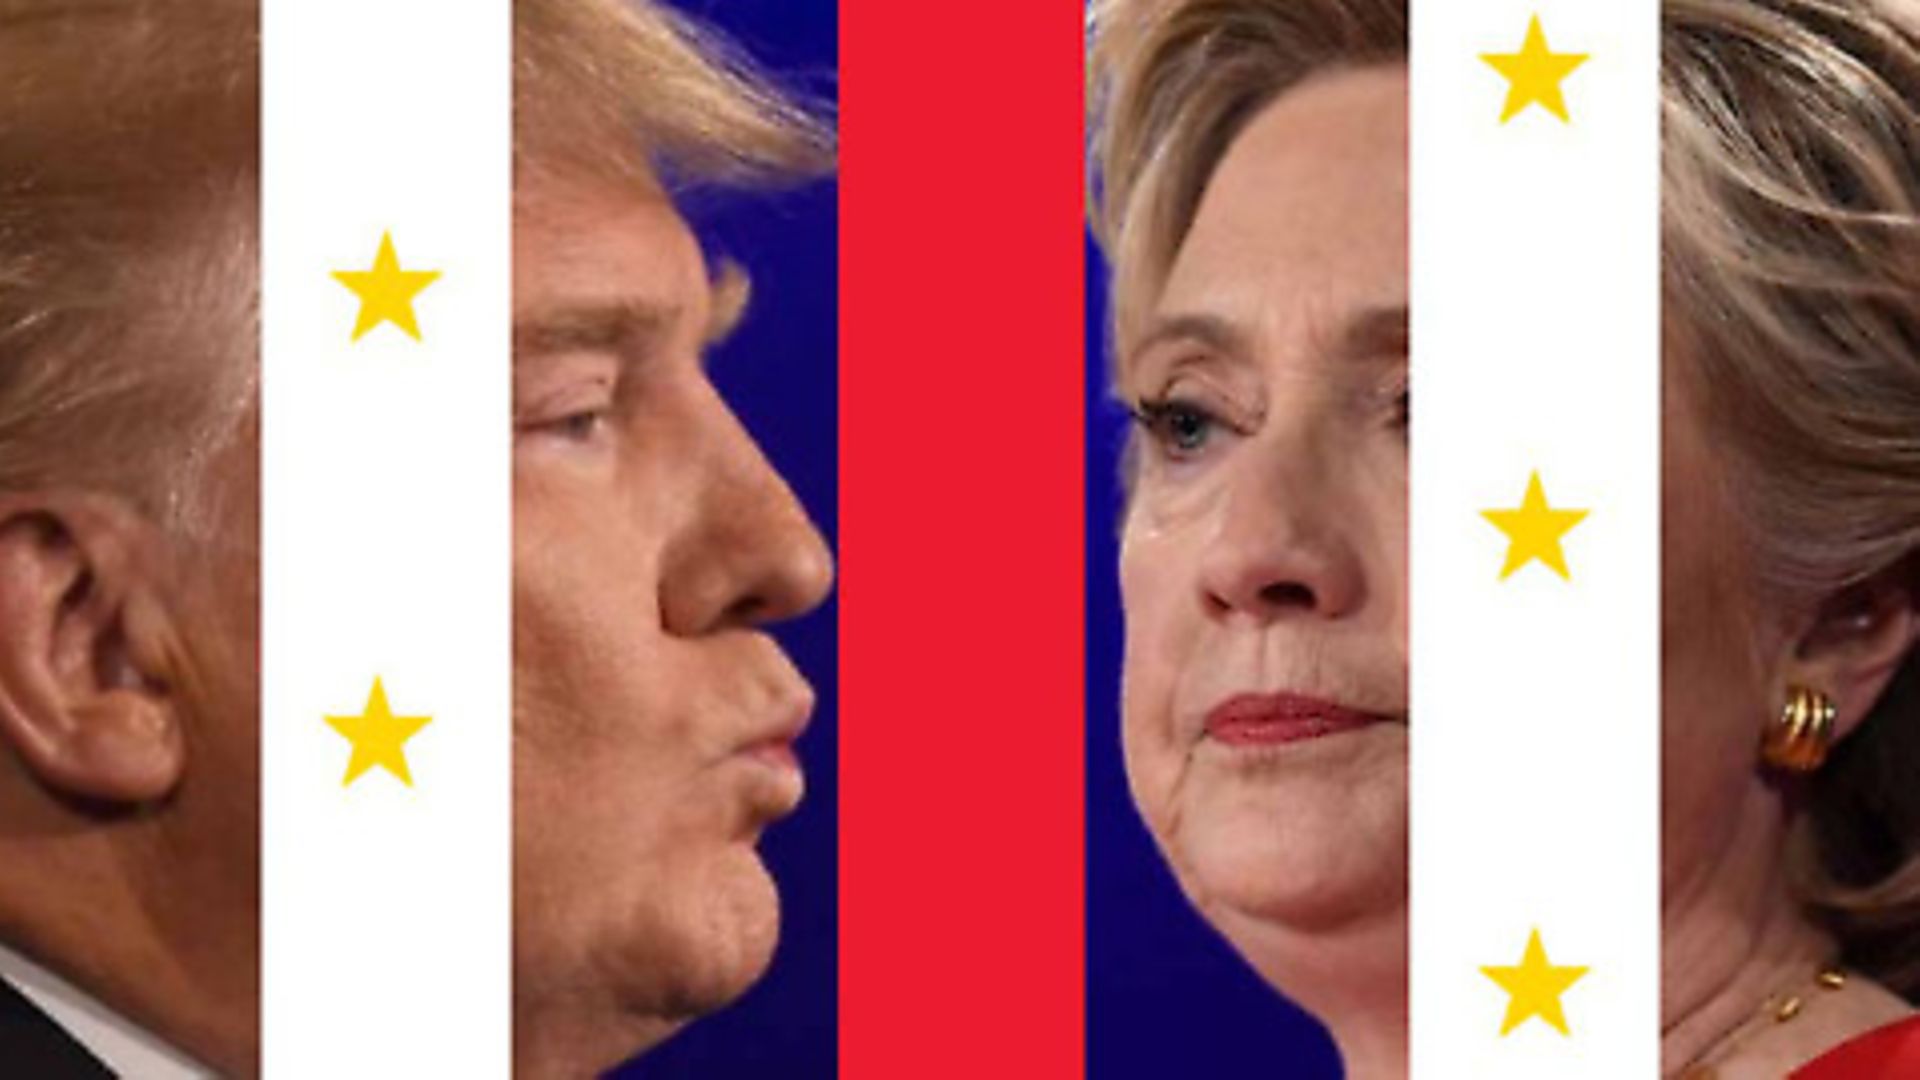 Trump vs. Clinton - Credit: Archant